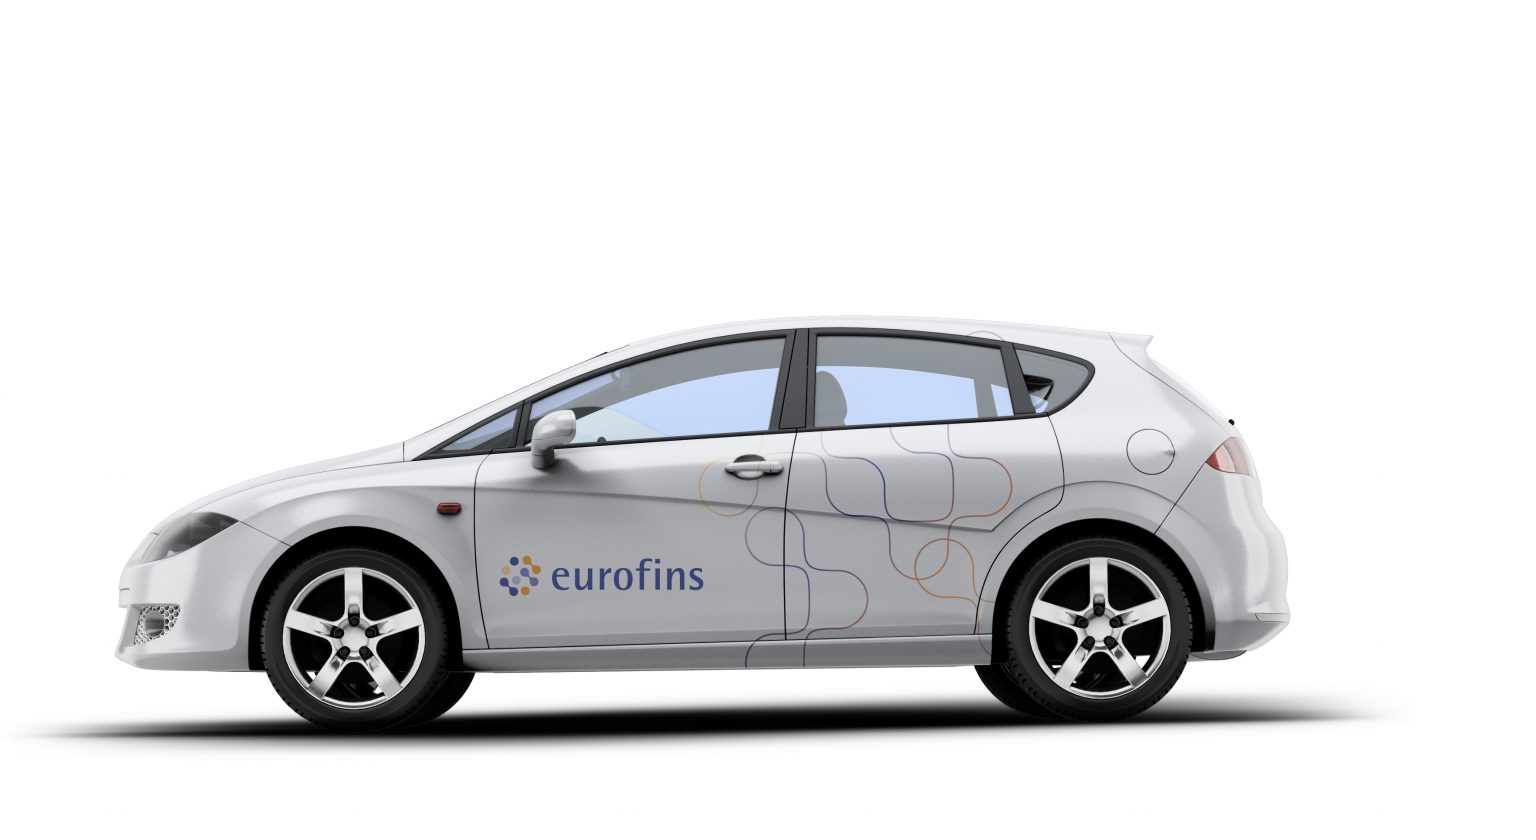 Eurofins-Fahrzeugdesign